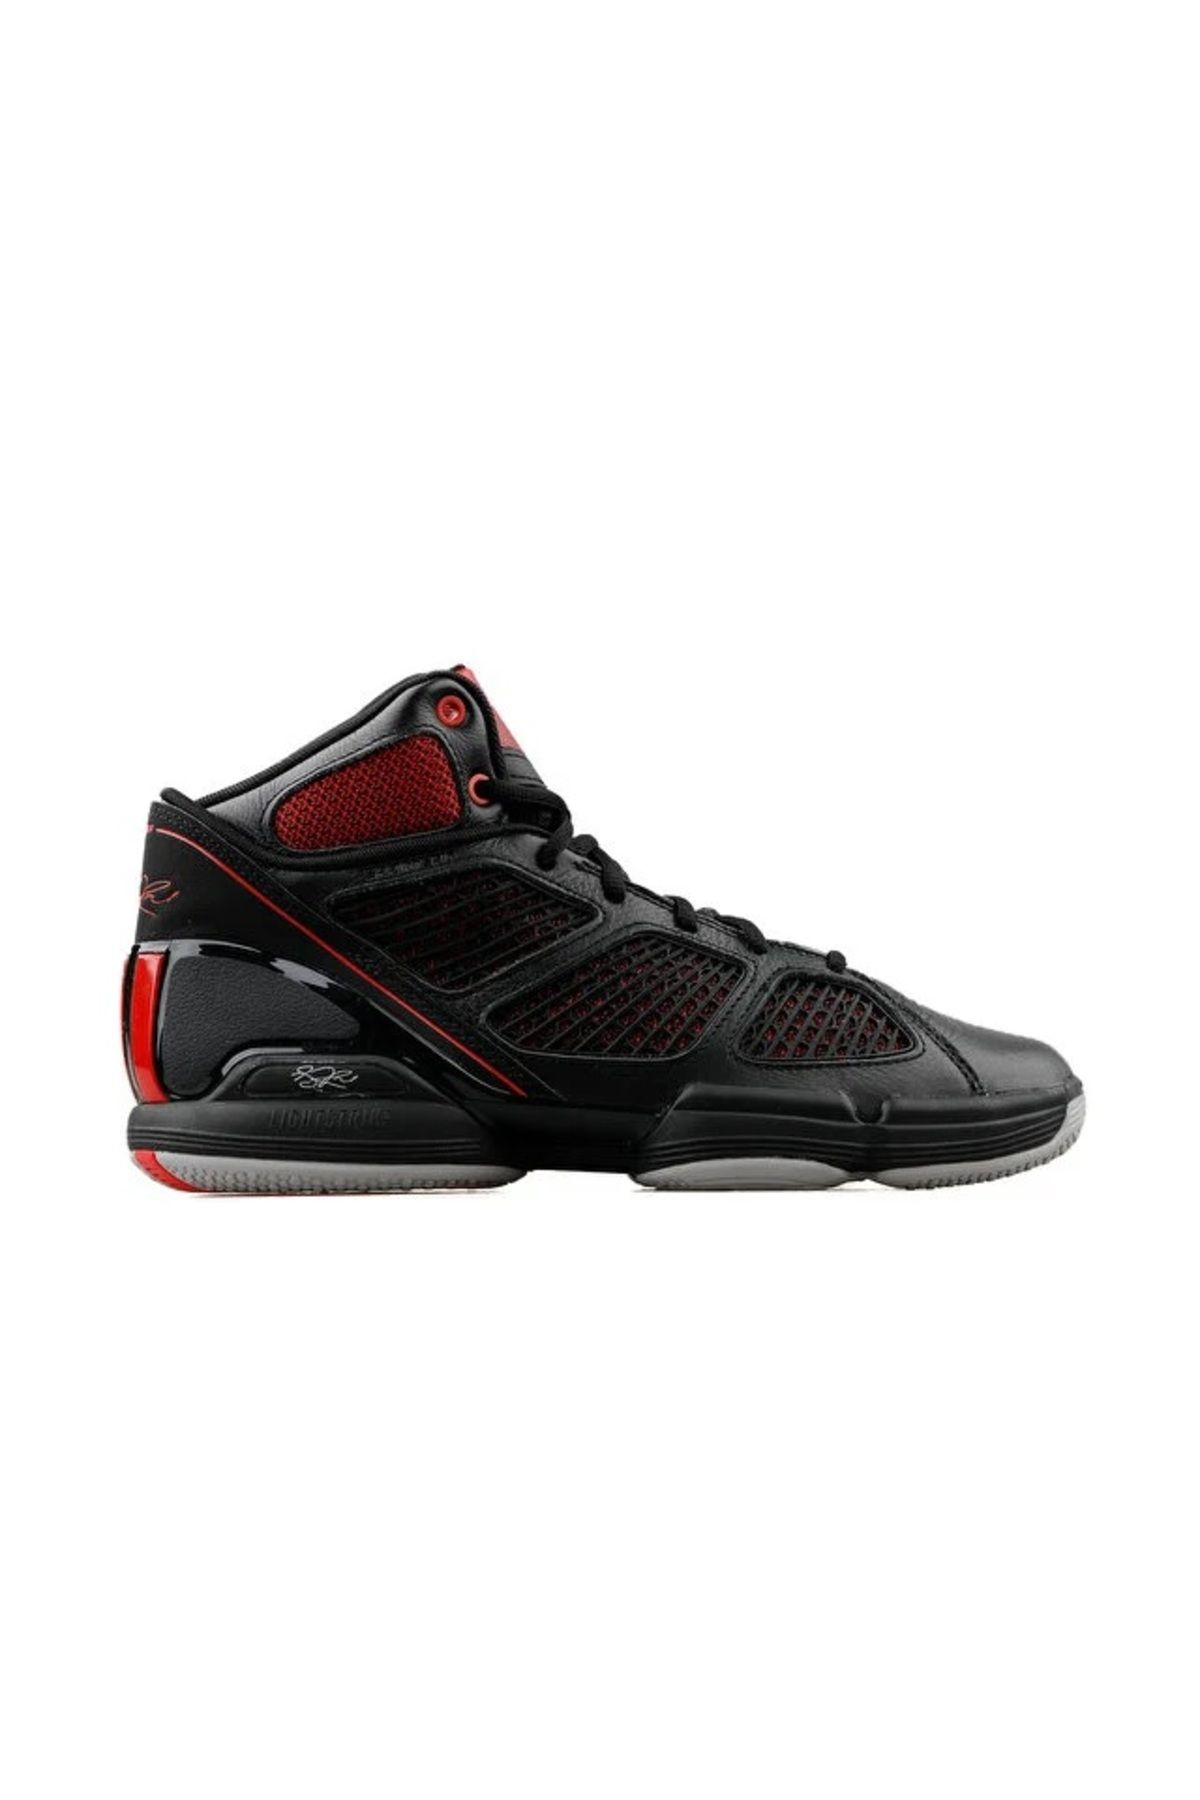 adidas Adizero Rose 1.5 Erkek Siyah Basketbol Ayakkabısı-gy6488